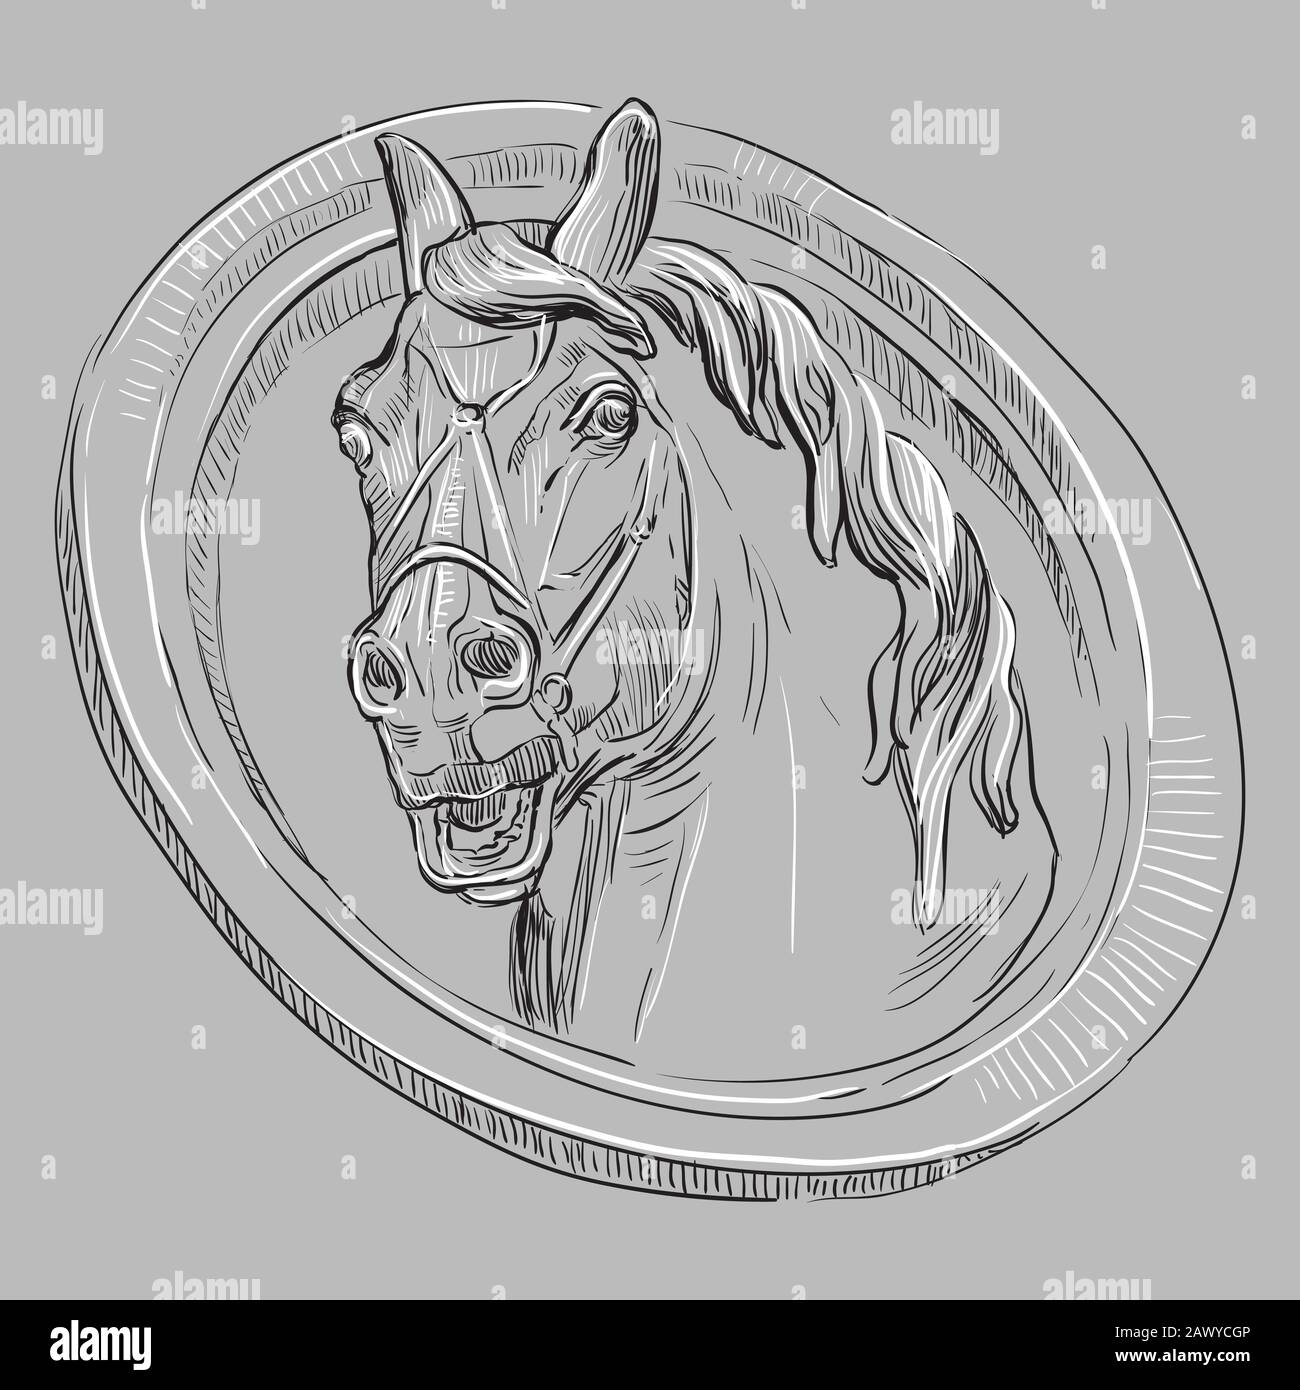 Ancien bas-relief vintage sous la forme d'une tête de cheval, vecteur main dessin illustration en noir et blanc couleurs isolées sur fond gris Illustration de Vecteur